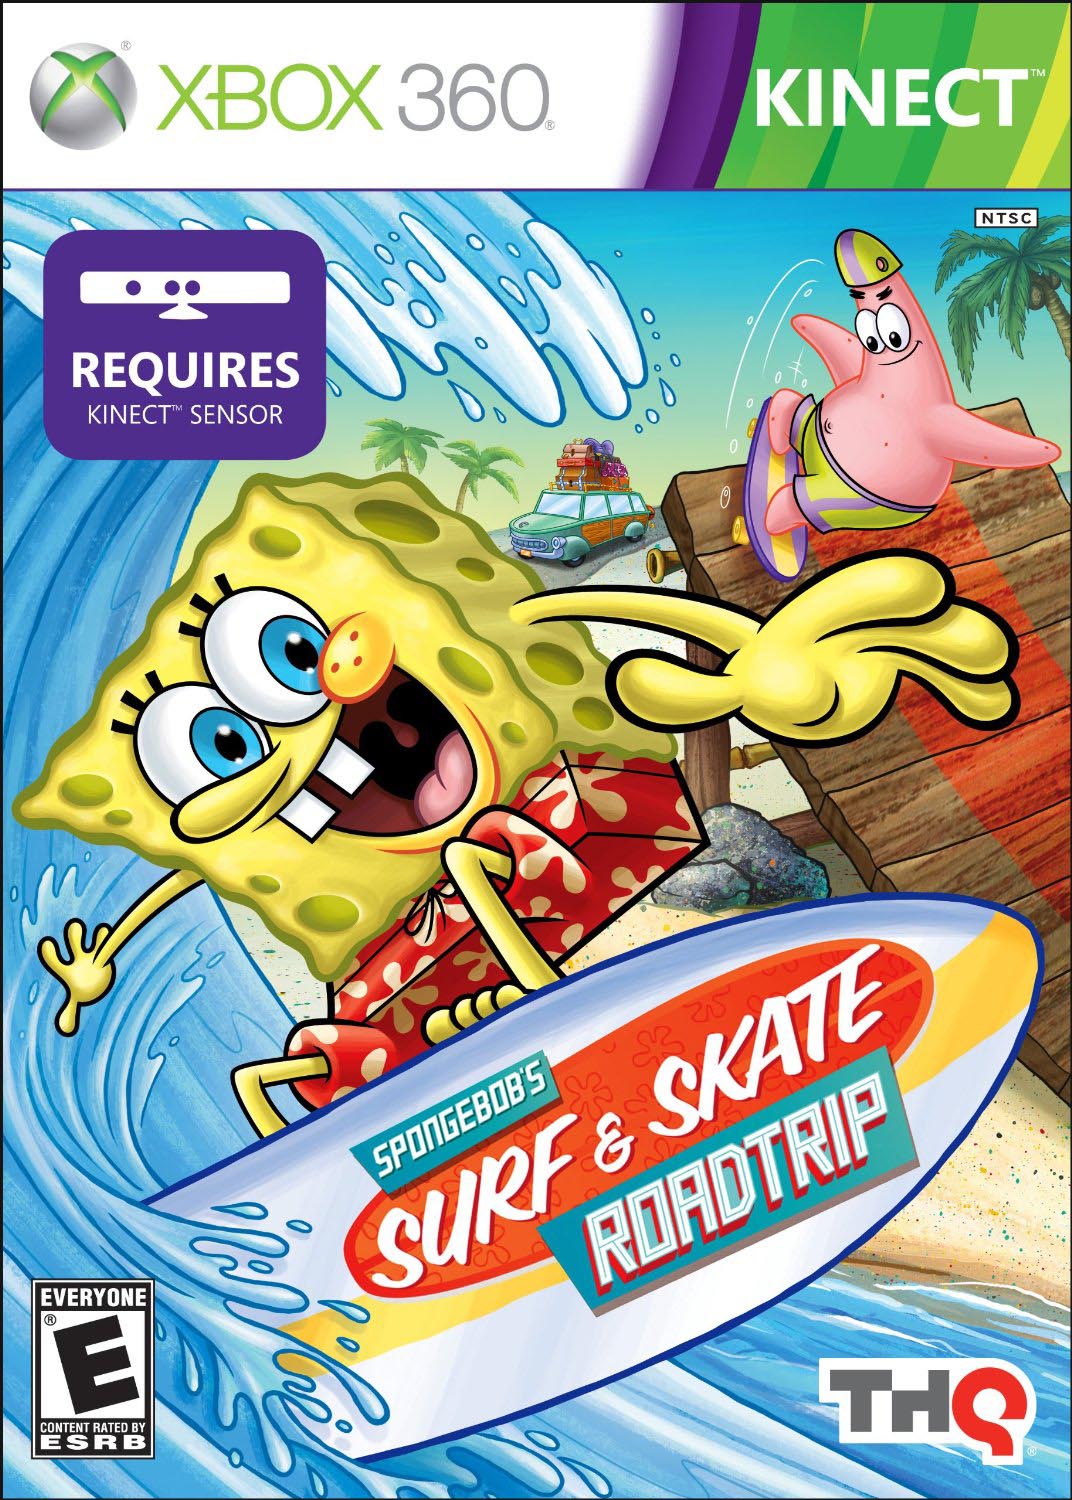 Jogos de skate xbox 360